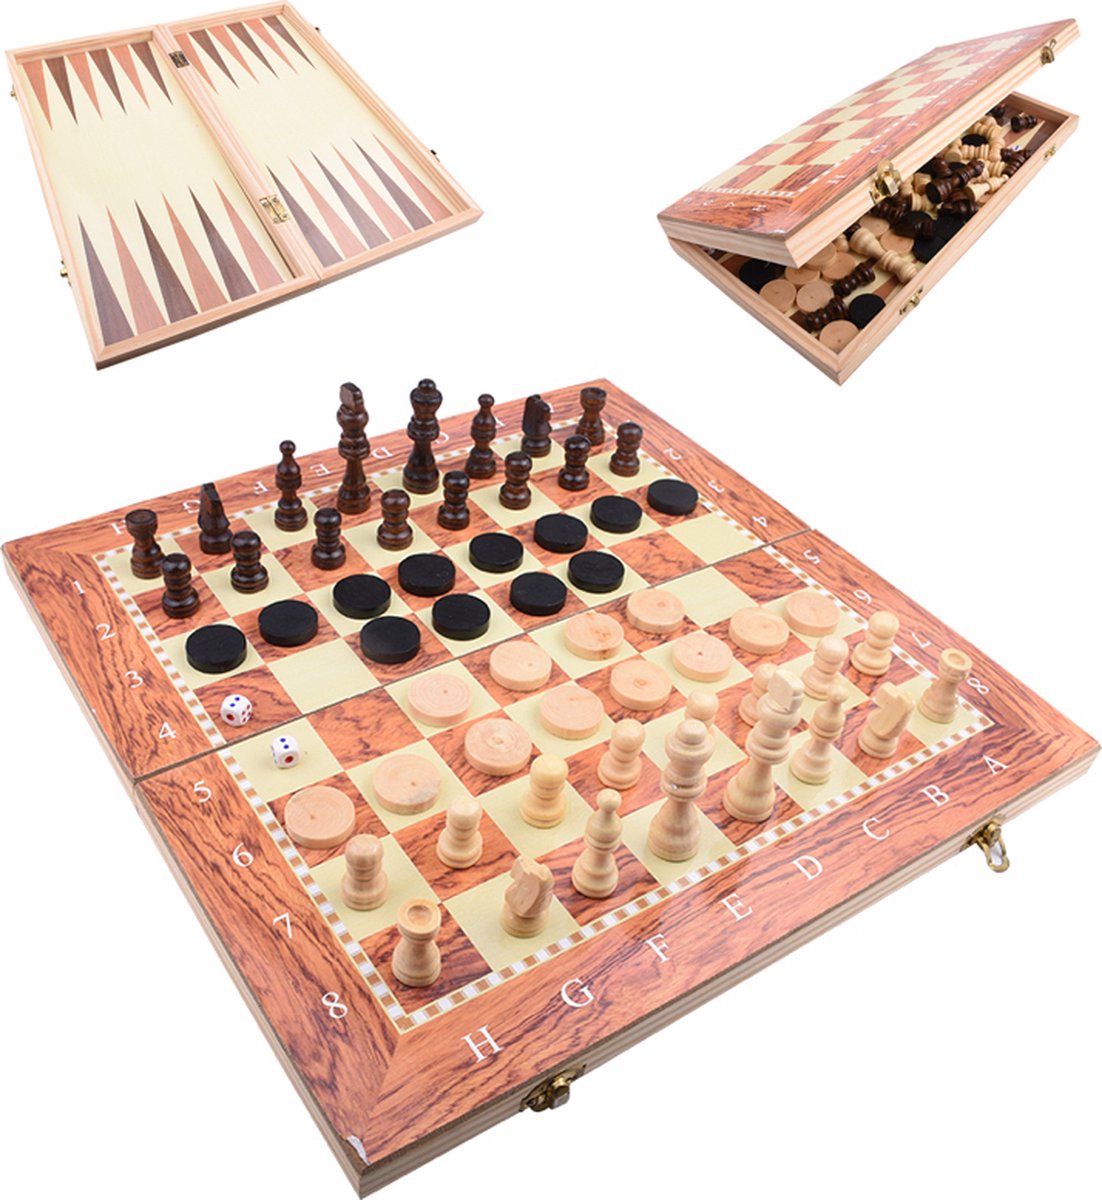 Schaakbord | Dambord | Backgammon | 24 x 24 cm | Schaakspel | Schaakset | Schaken | Dammen | Met Schaakstukken | 3-in-1 Bordspel | Chess | Hout | Opklapbaar